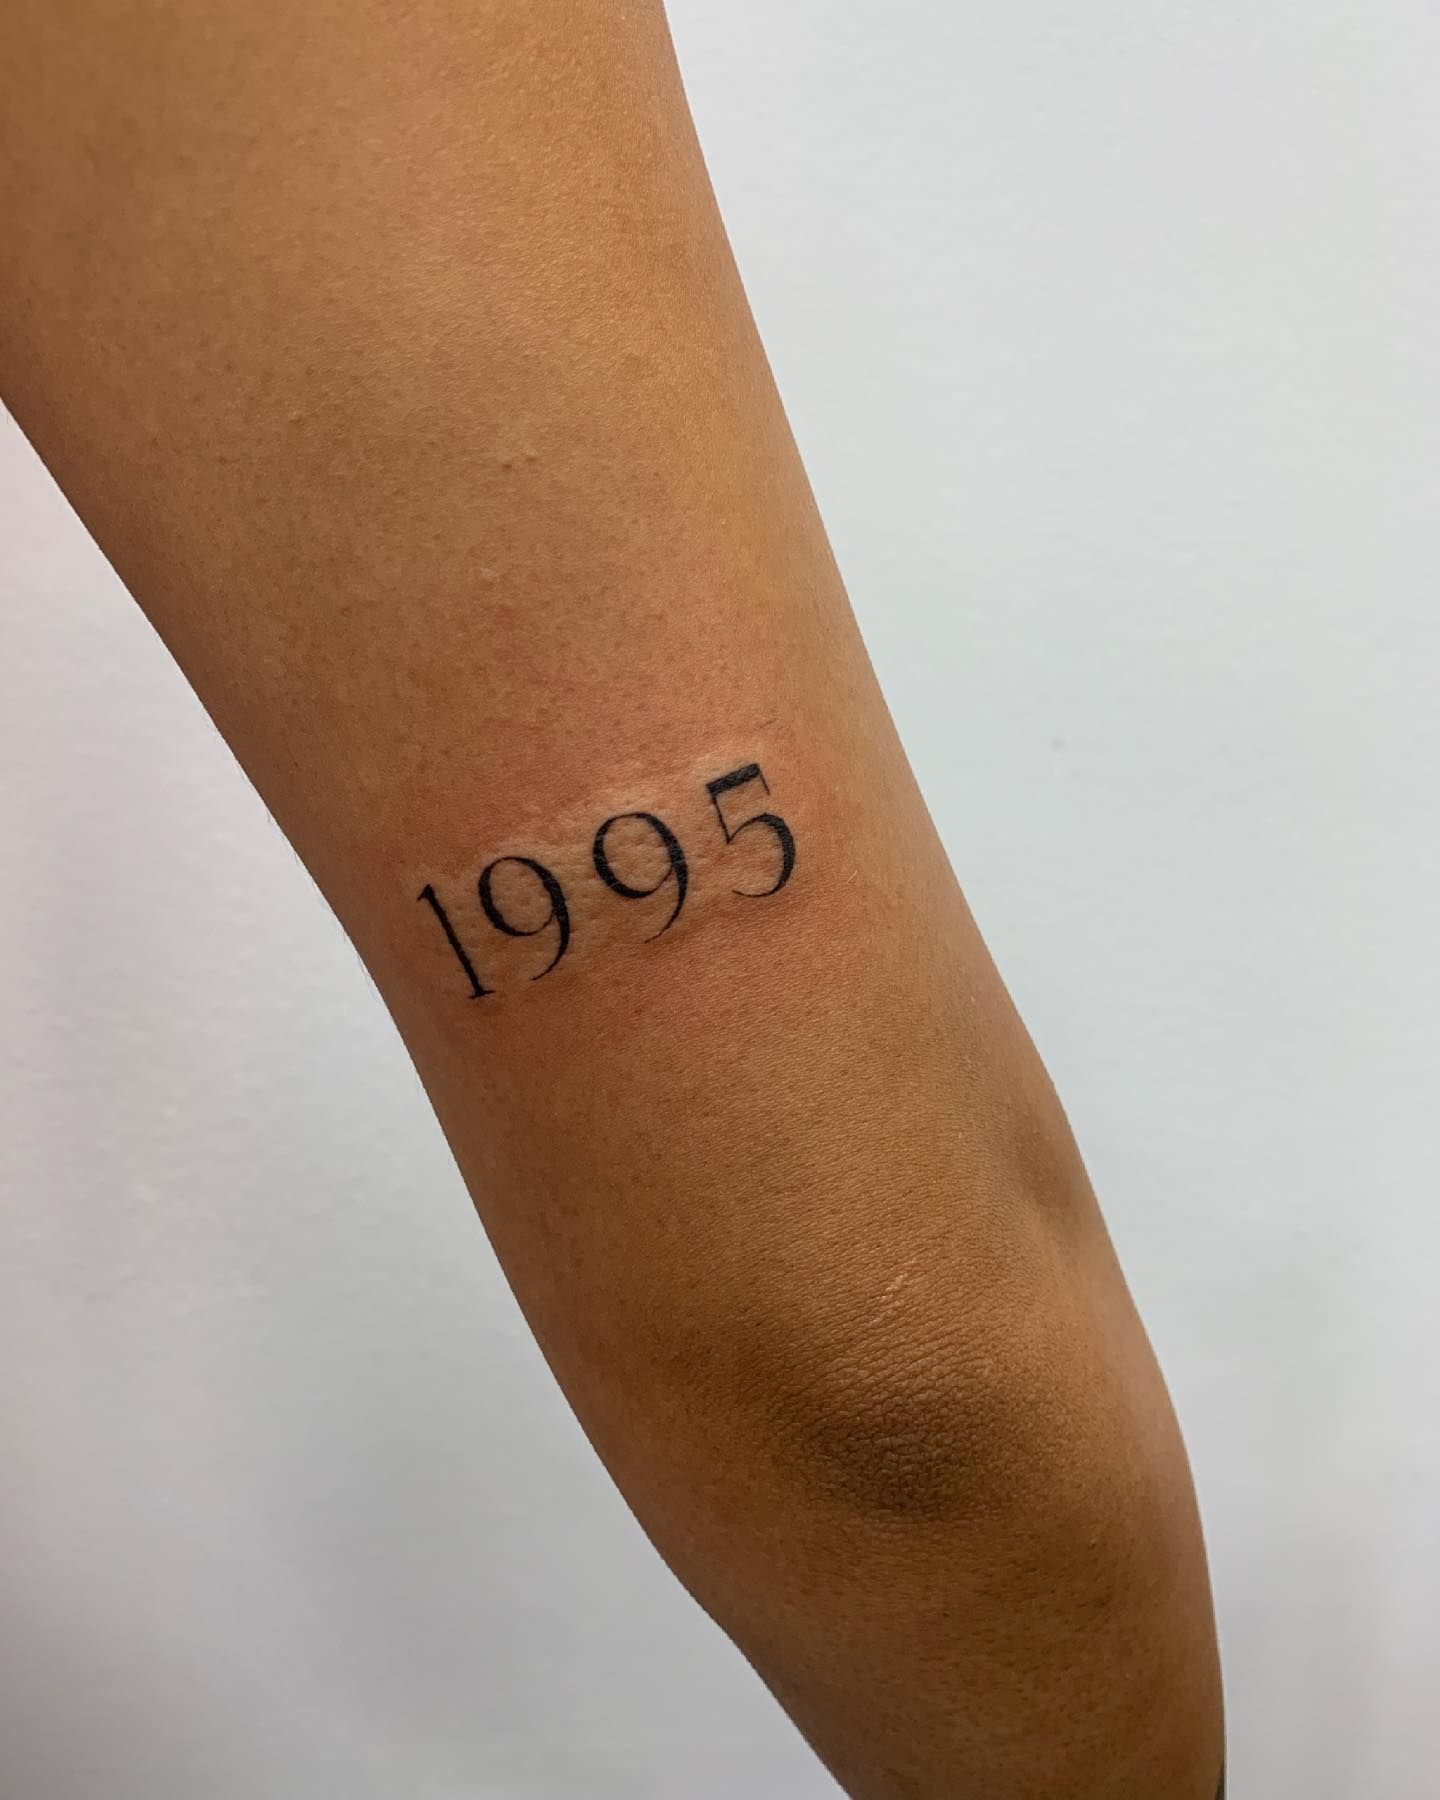 Pin by Olivia Campbell on Tattoos | Minimalist tattoo, Band tattoo,  Matching tattoos